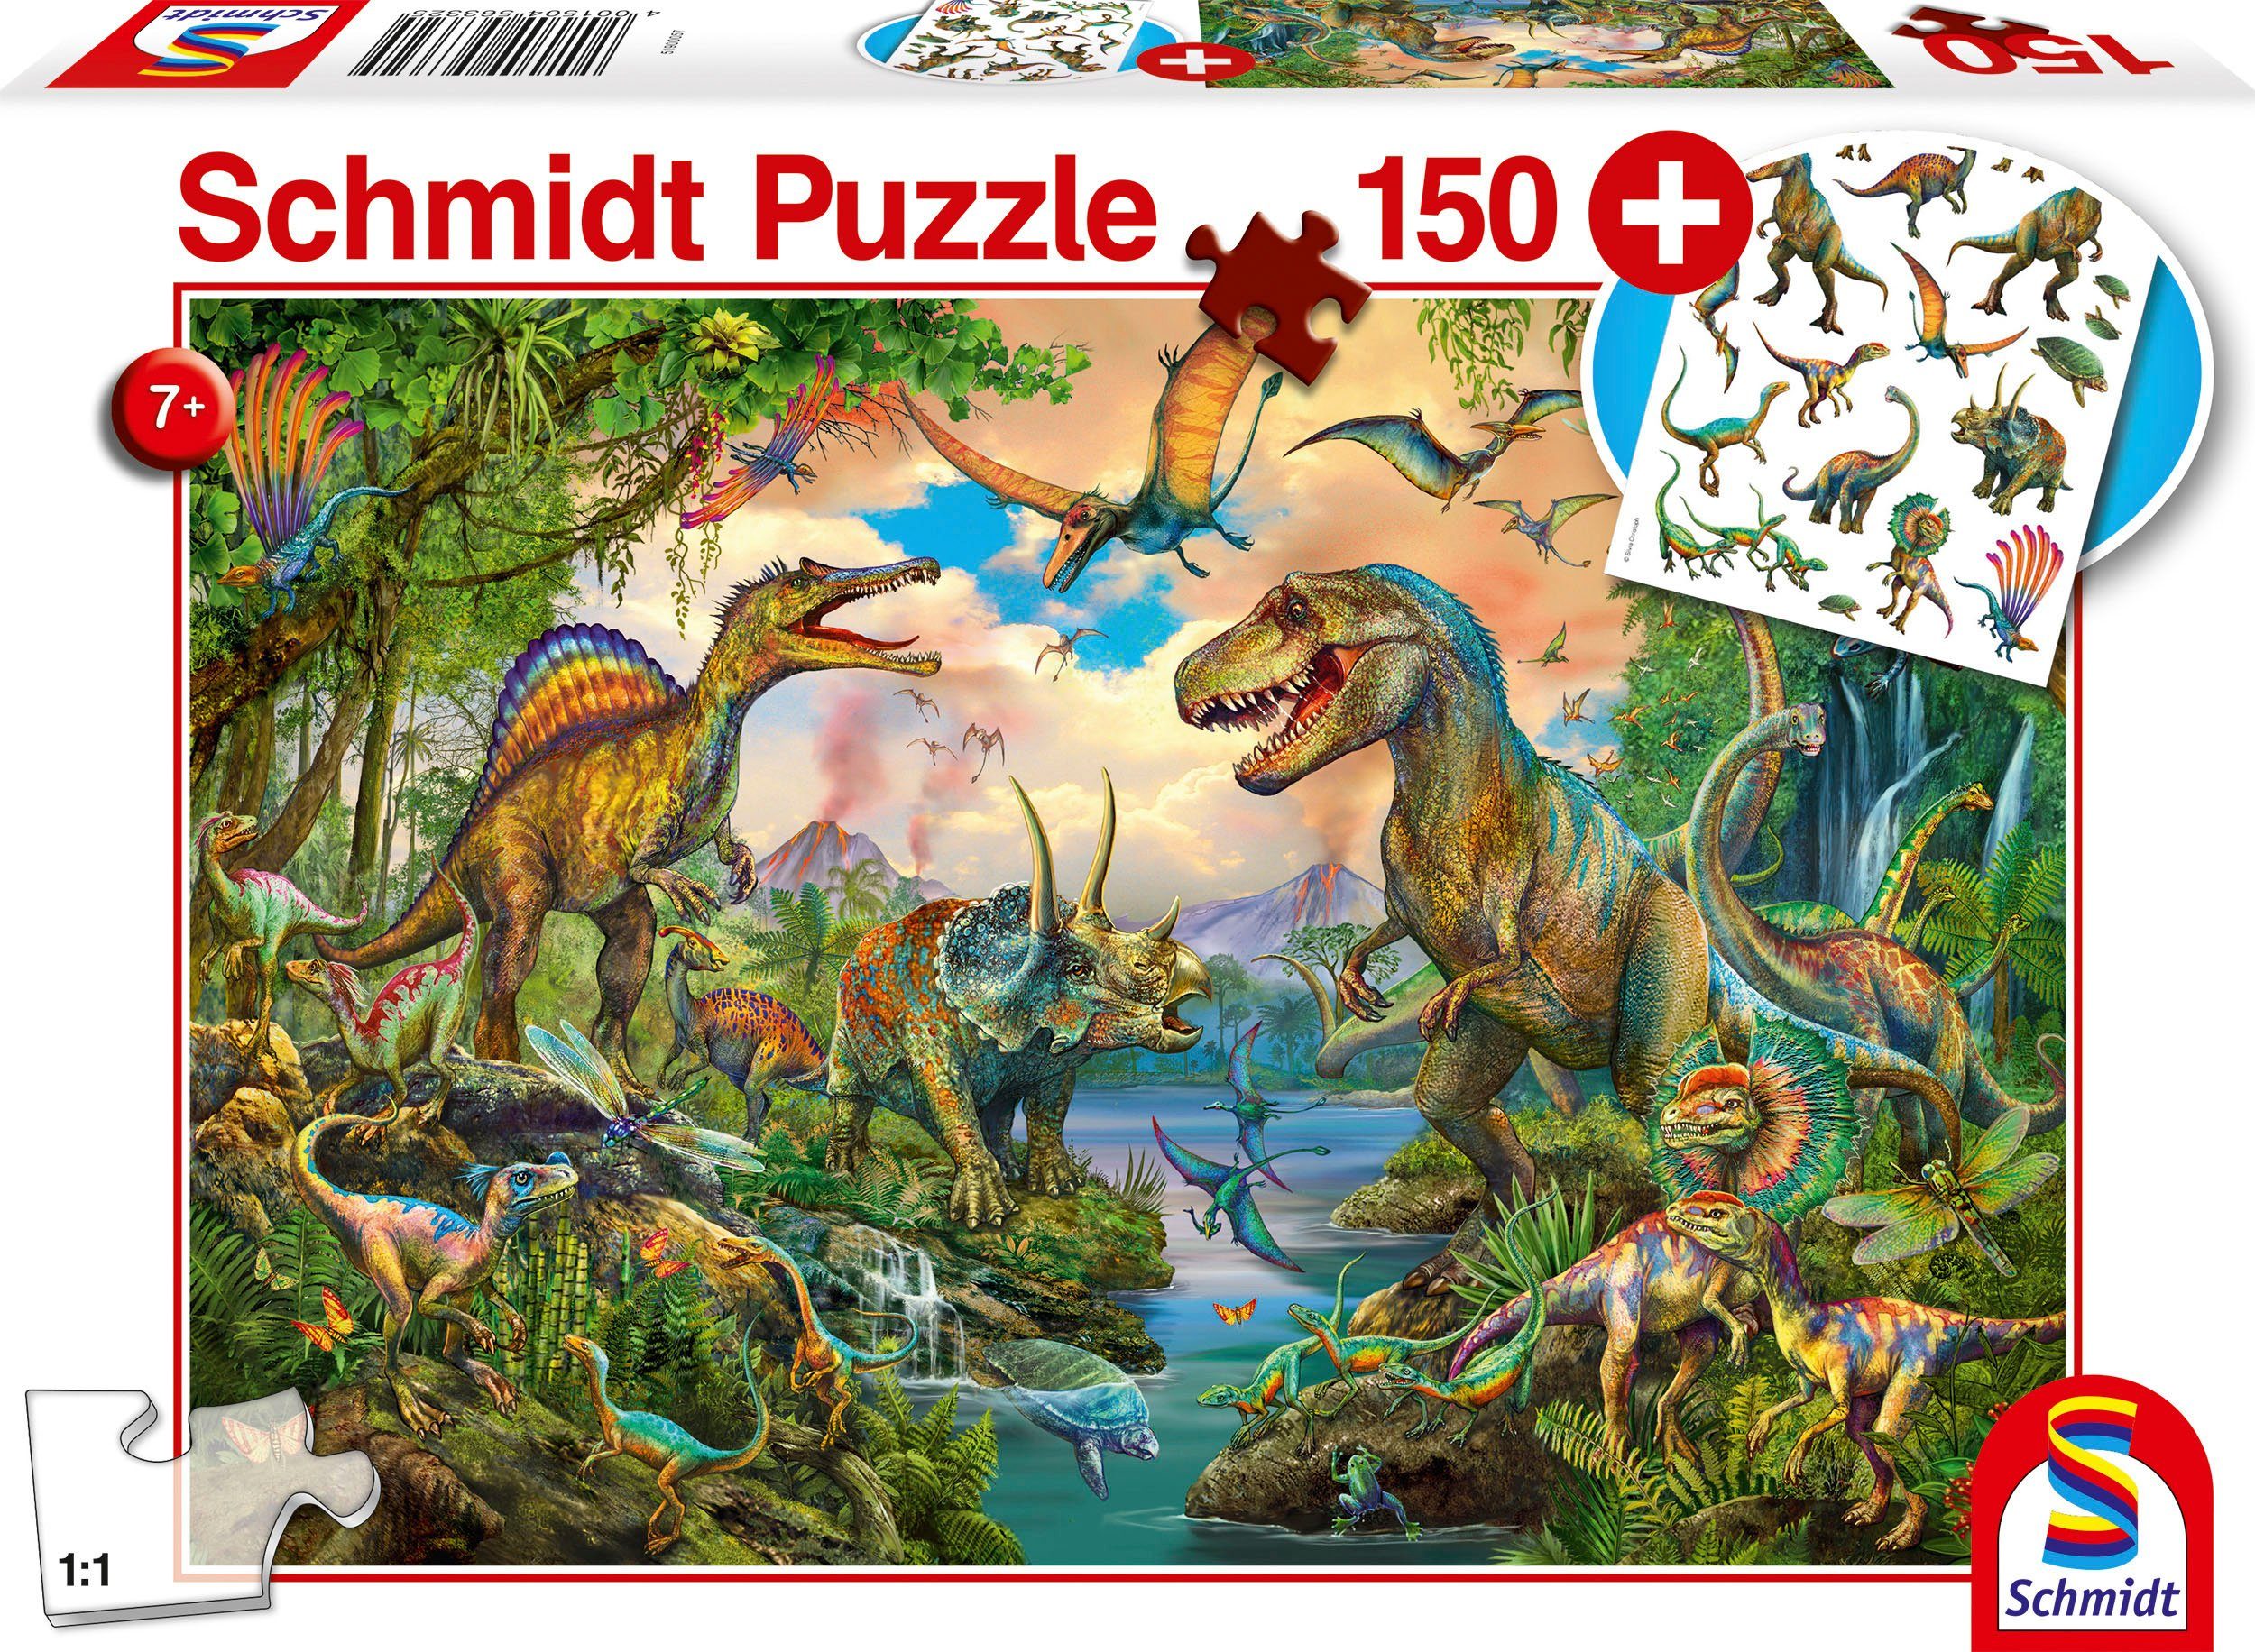 Schmidt Spiele Puzzle Wilde Dinos, 150 Puzzleteile, mit Add-on (Tattoos Dinosaurier); Made in Europe